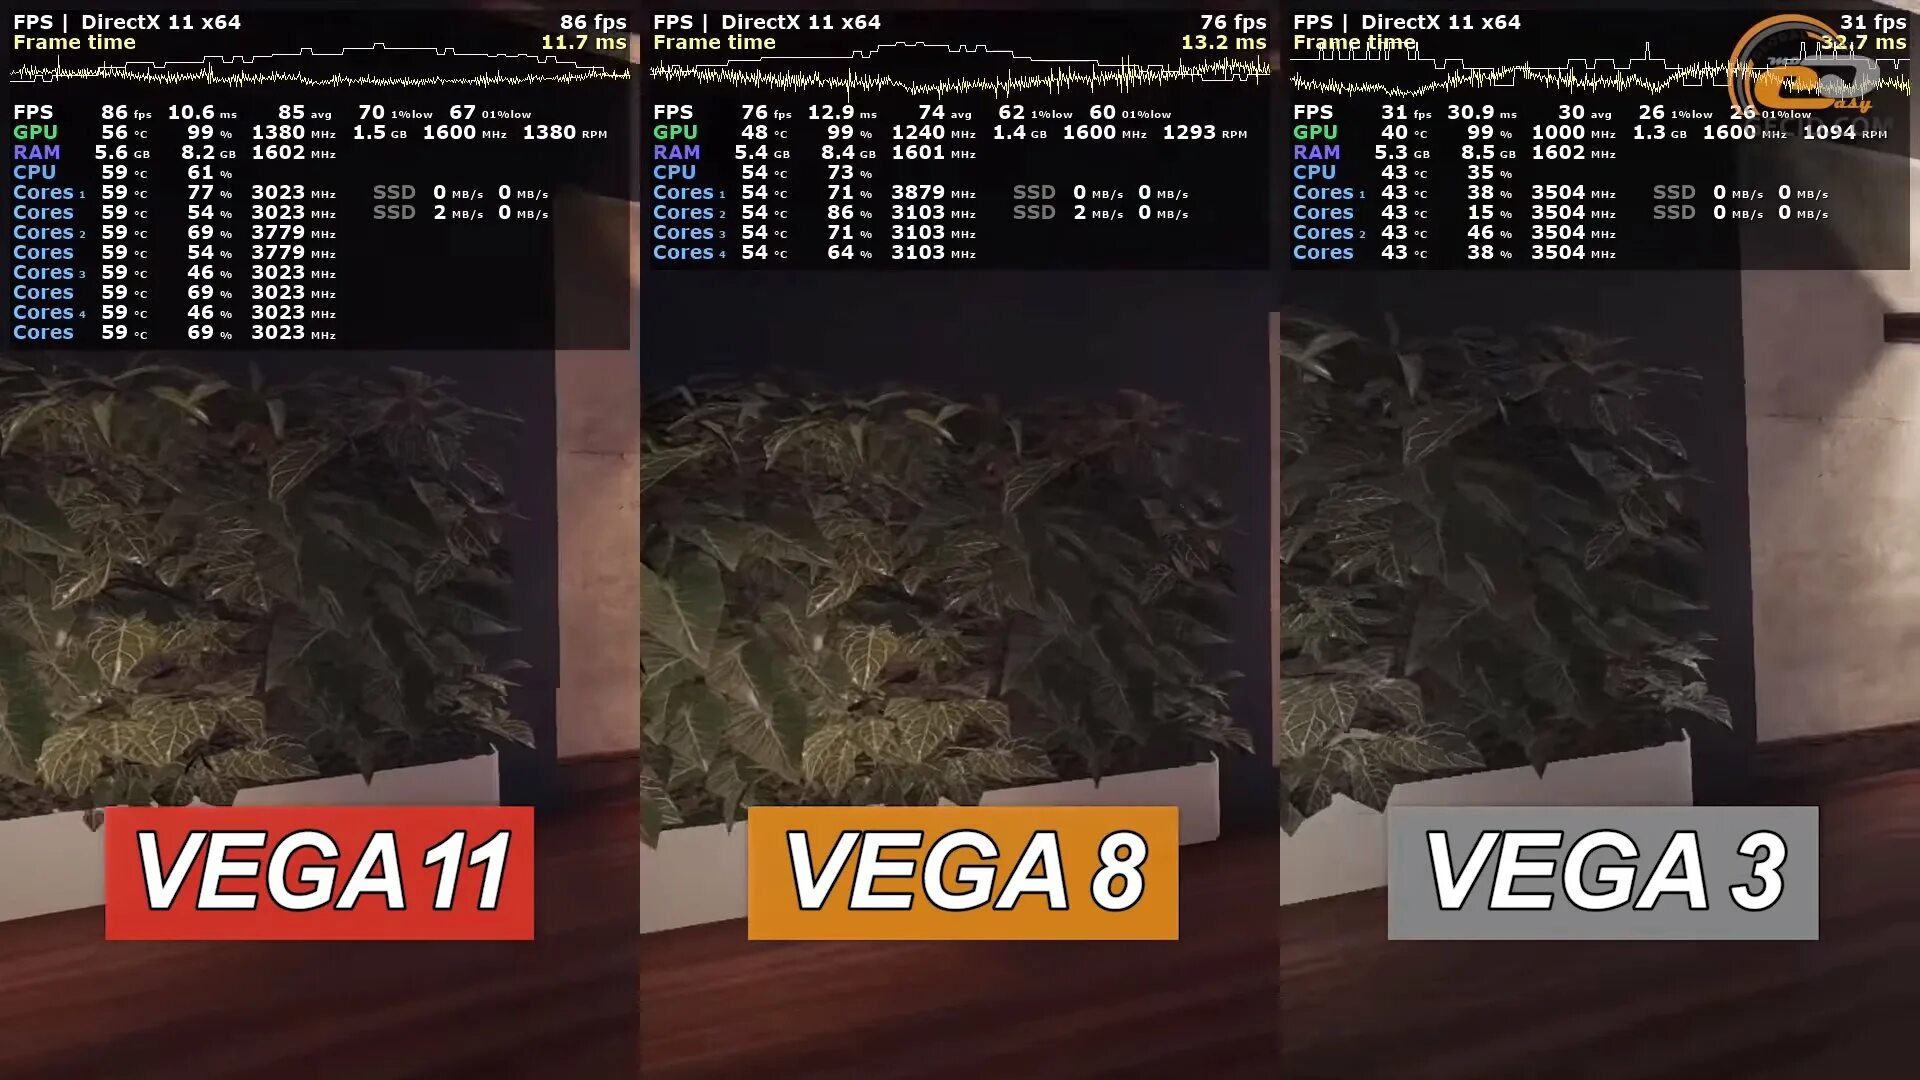 Amd vega сравнение. RX Vega 11. AMD Radeon TM RX Vega 11 Graphics. RX Vega 11 Graphics видеокарта. RX Vega 11 характеристики.